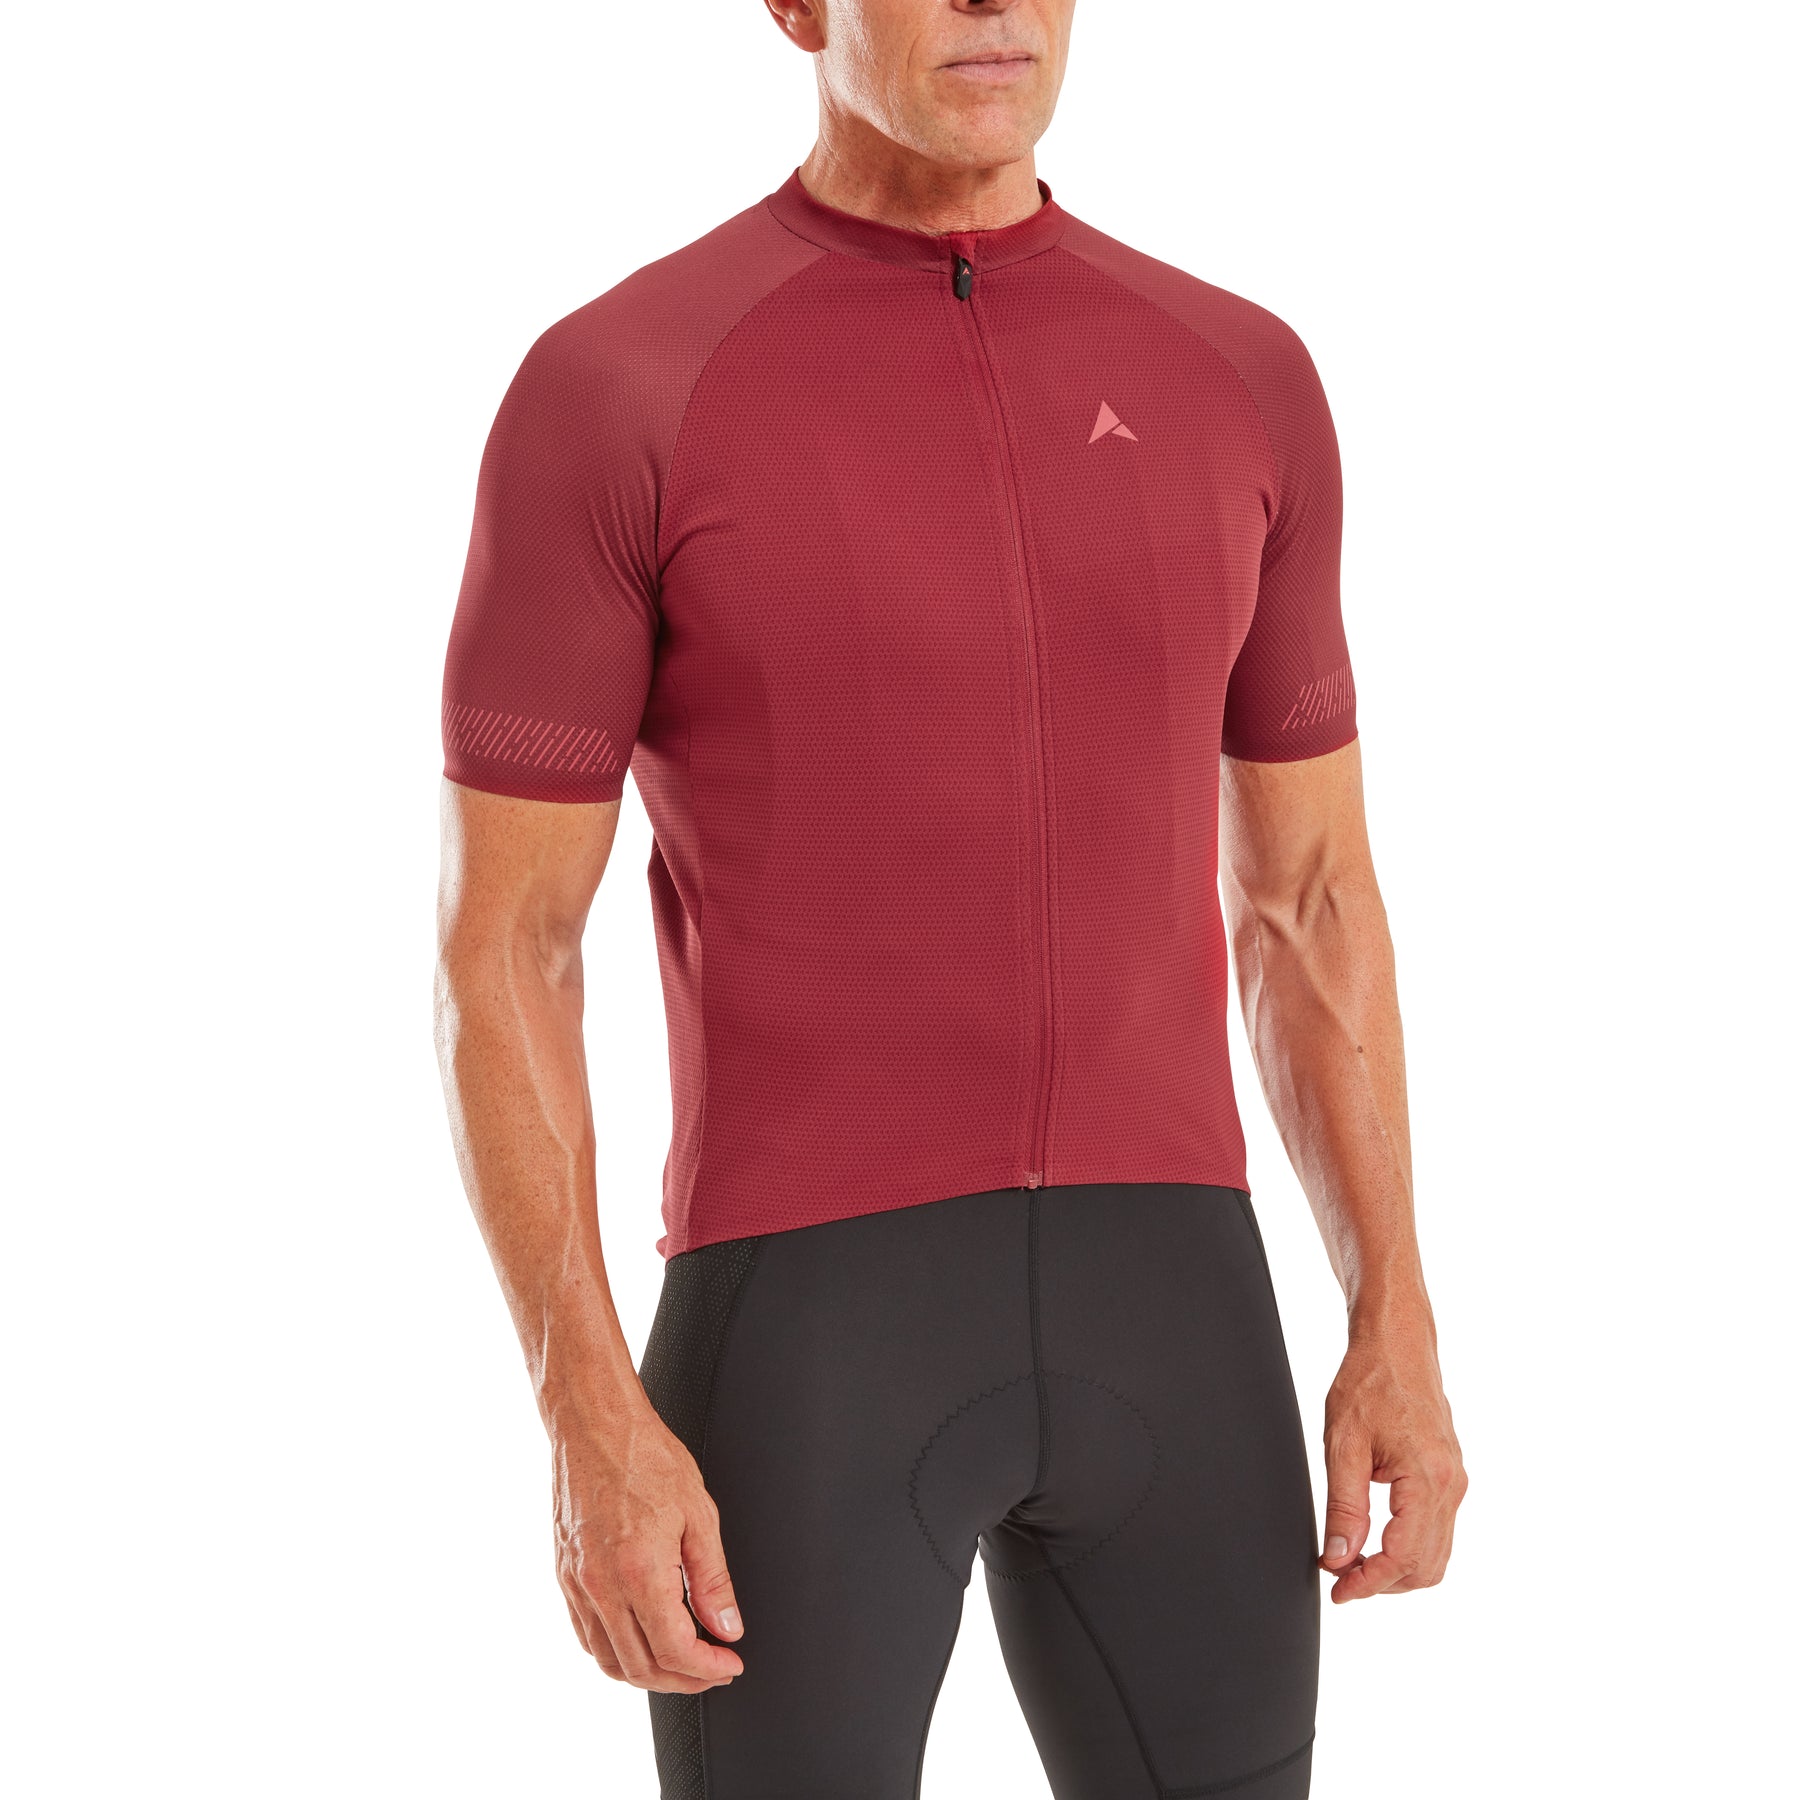 Altura Endurance Men's Short Sleeve Cycling Jersey Dark Red XL